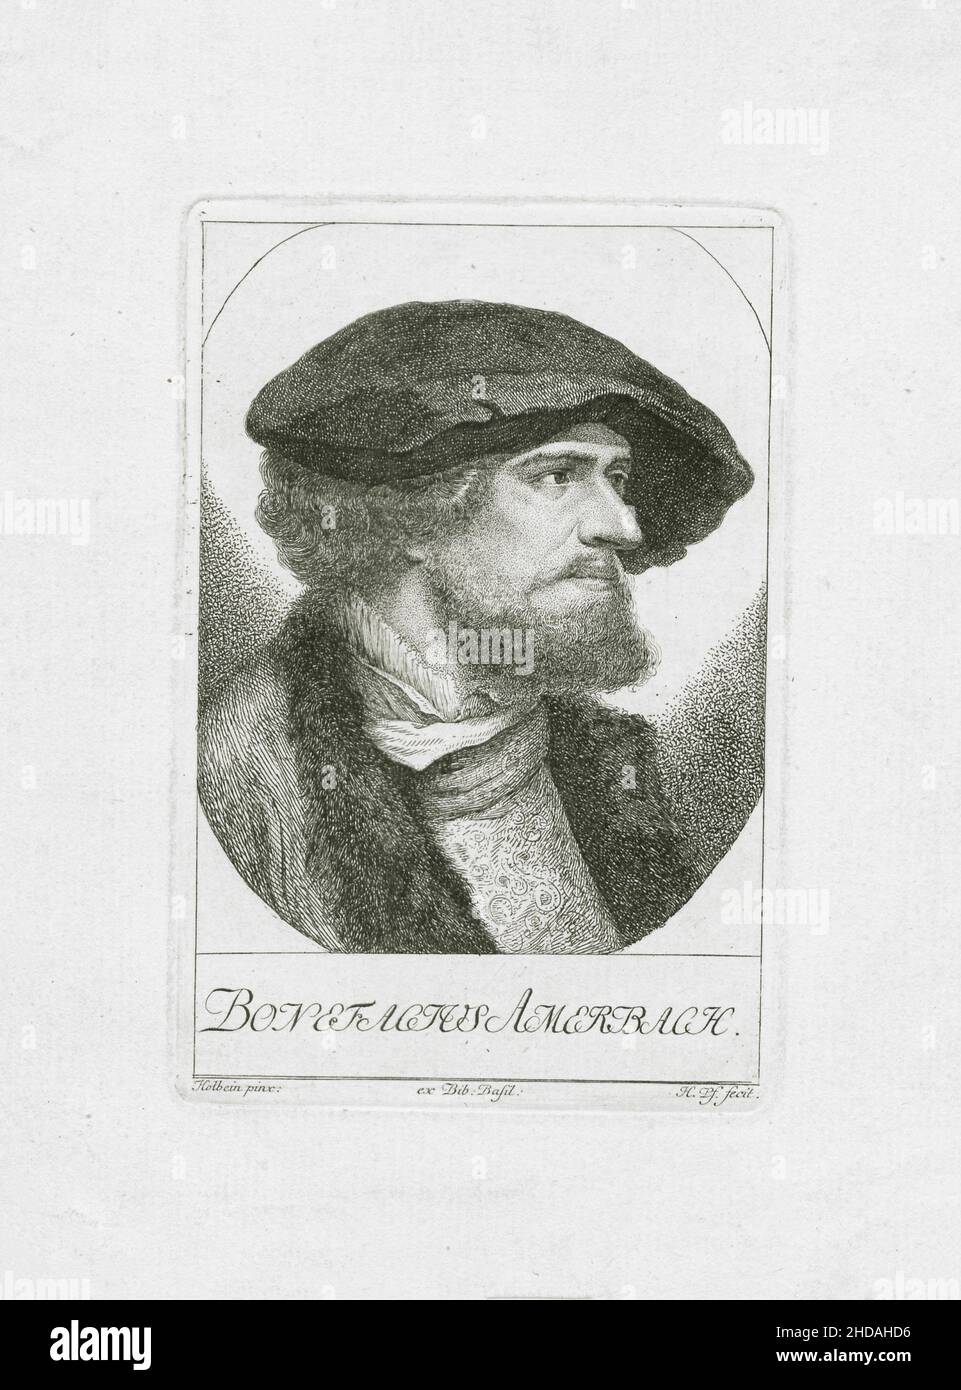 Ritratto di Bonifacius Amerbach. Bonifacius Amerbach (1495 – 1562) fu giurista, studioso, umanista influente e rettore dell'Università 1780 Foto Stock